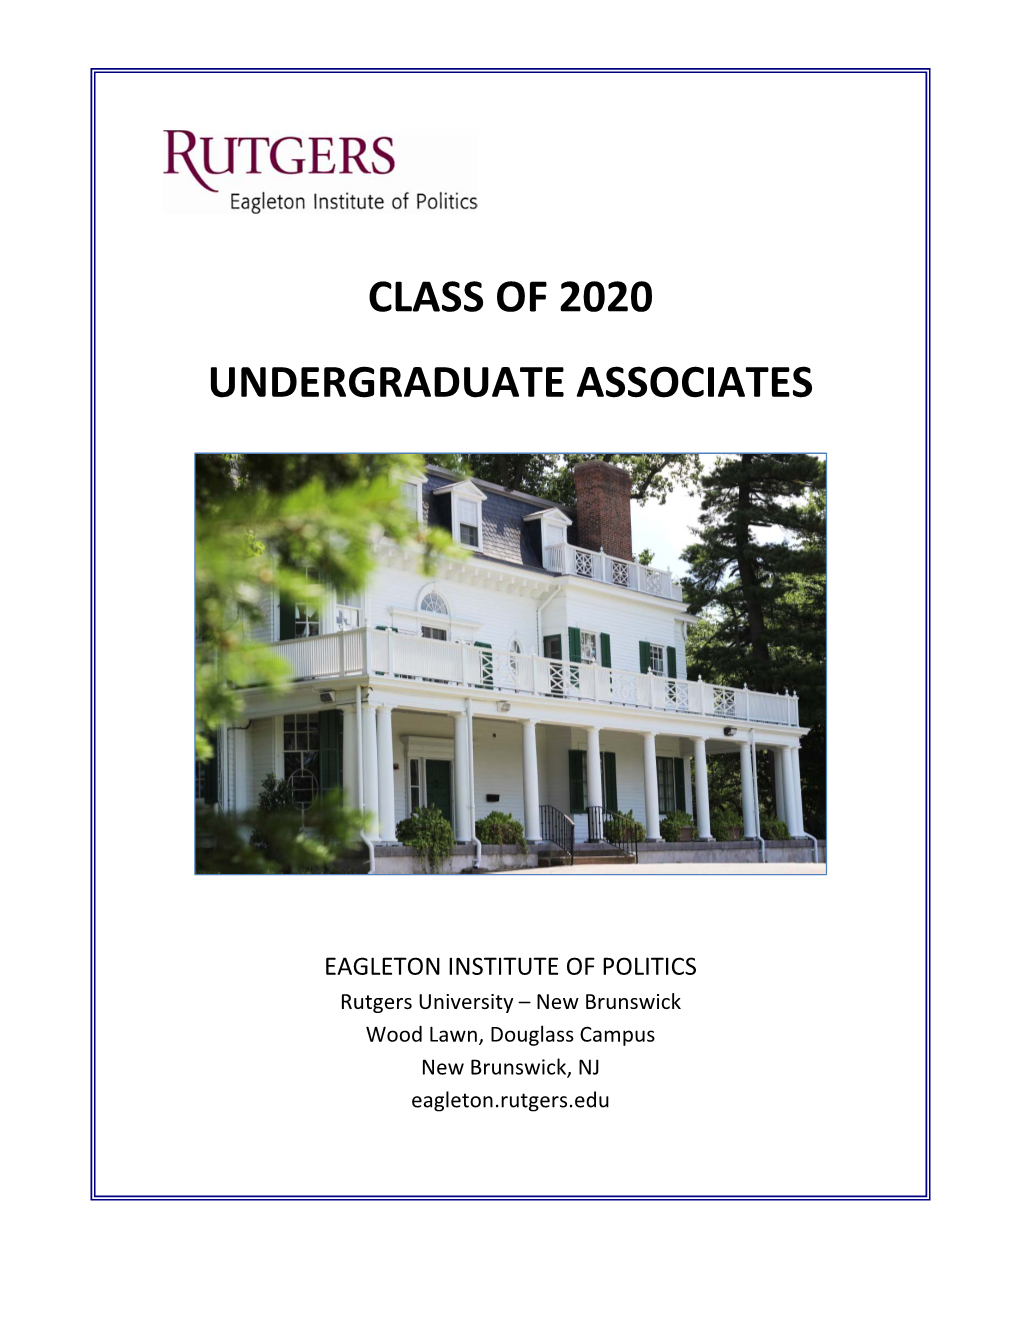 19-20 Undergraduate Associate